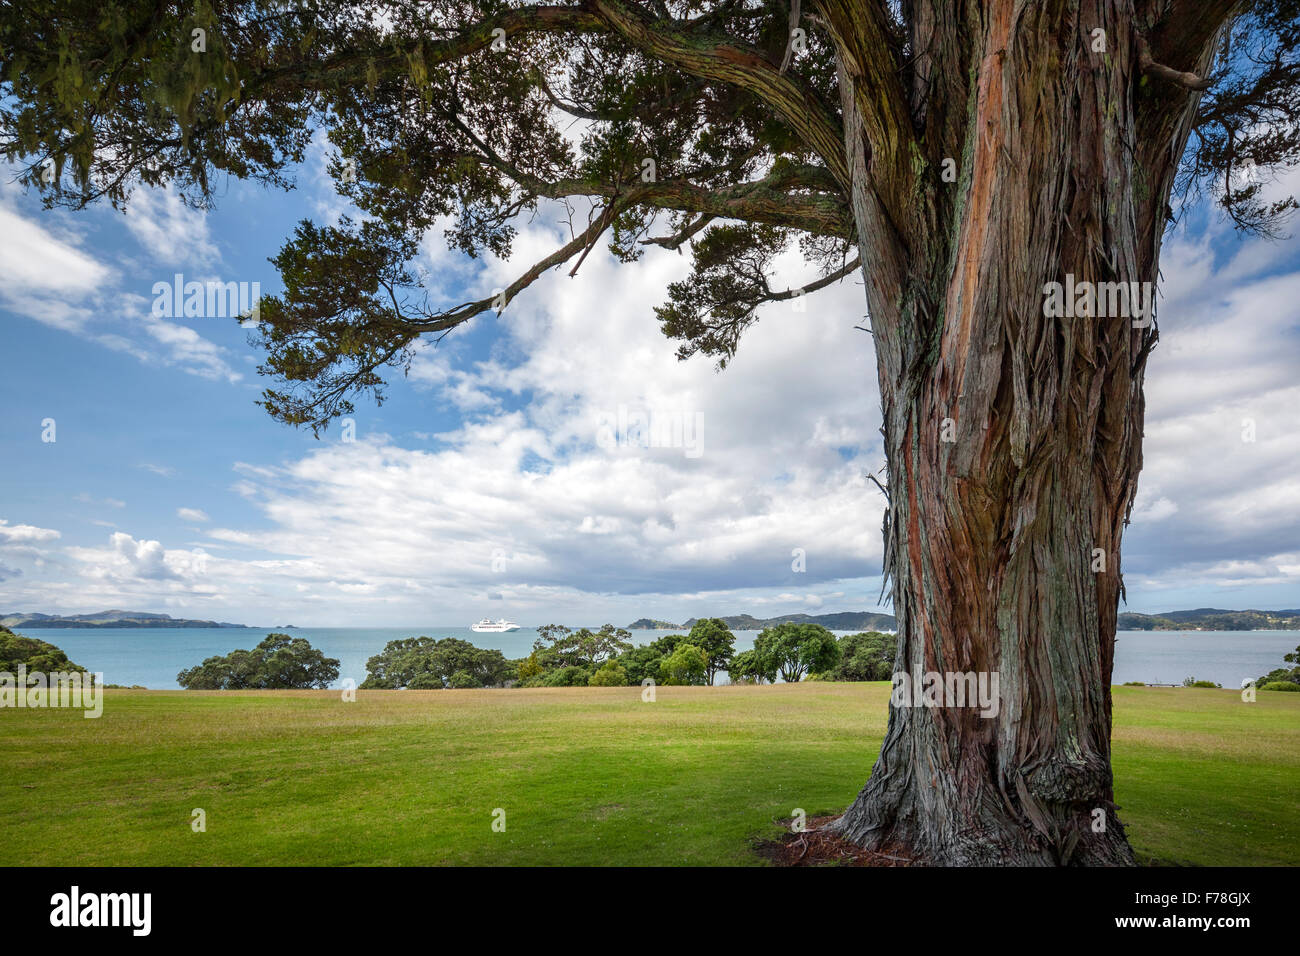 Neuseeland. Waitangi Treaty Grounds und der Bay of Islands. Kreuzfahrt Schiff Luxusliner in der Bucht. Stockfoto